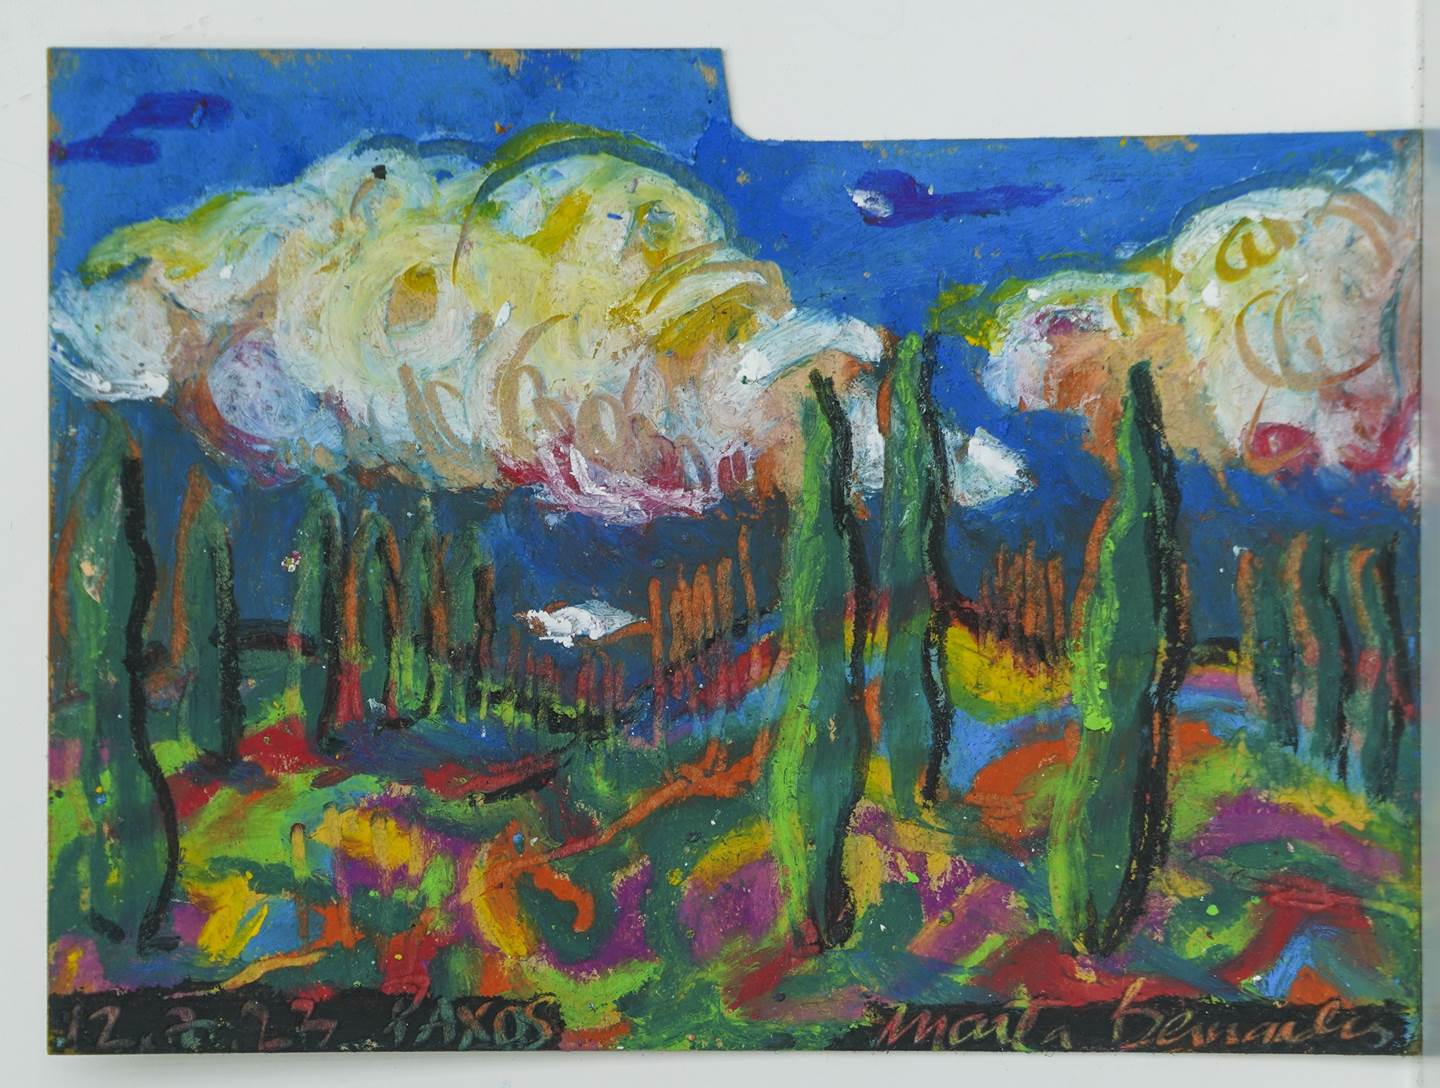 Desenhuras com Versítulos., original Landscape Oil Painting by Marta Bernardes